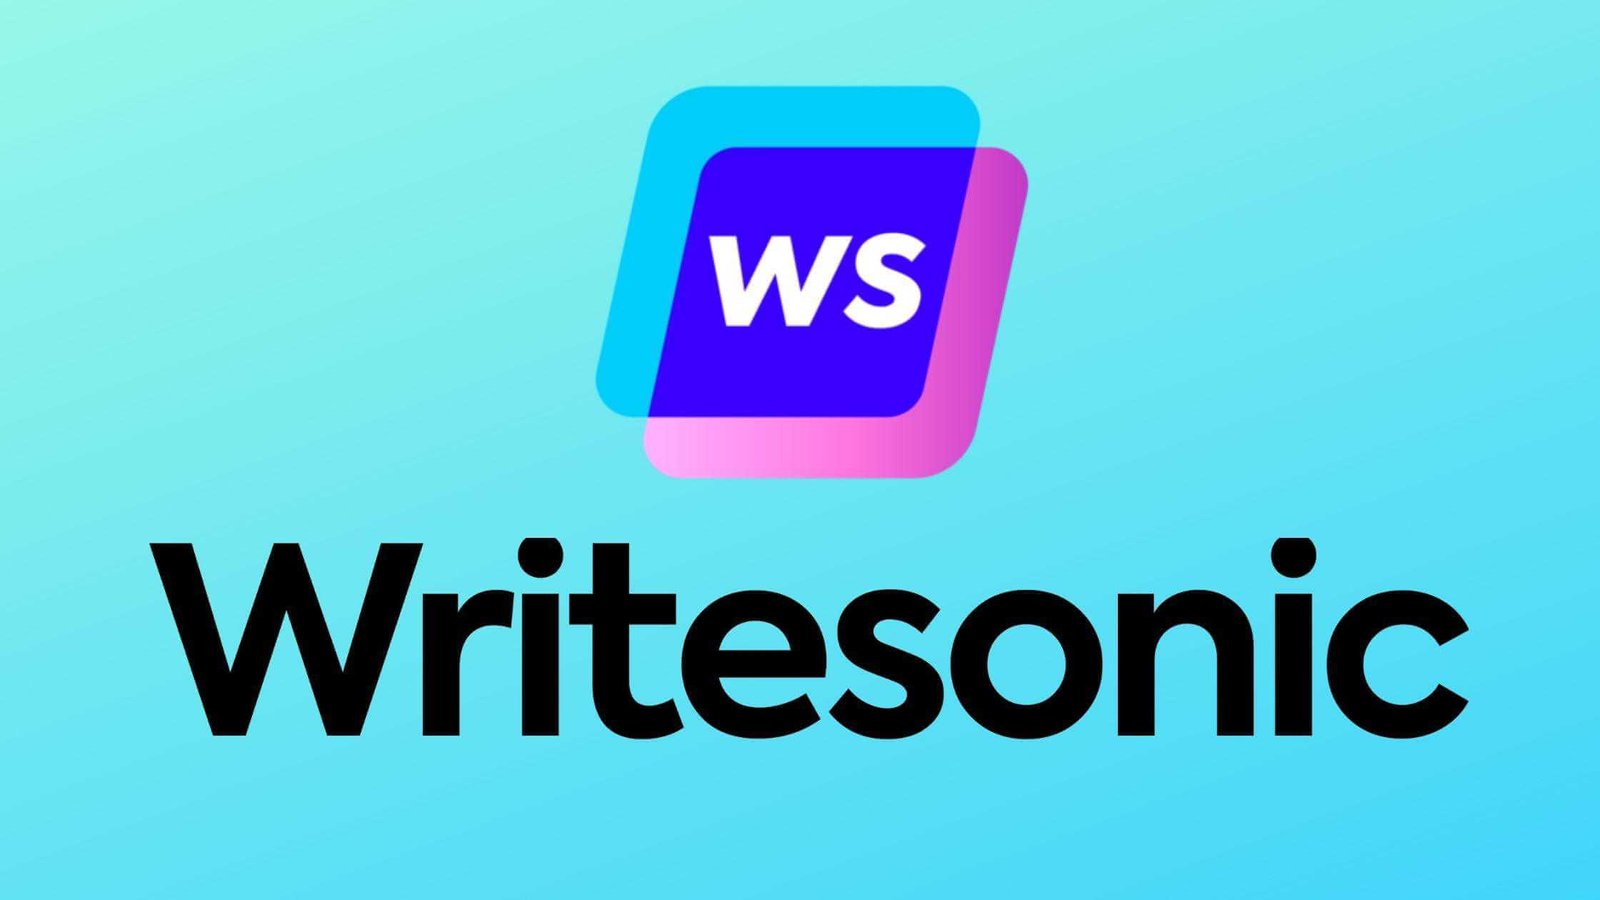 Writesonic – An AI Writing Tool